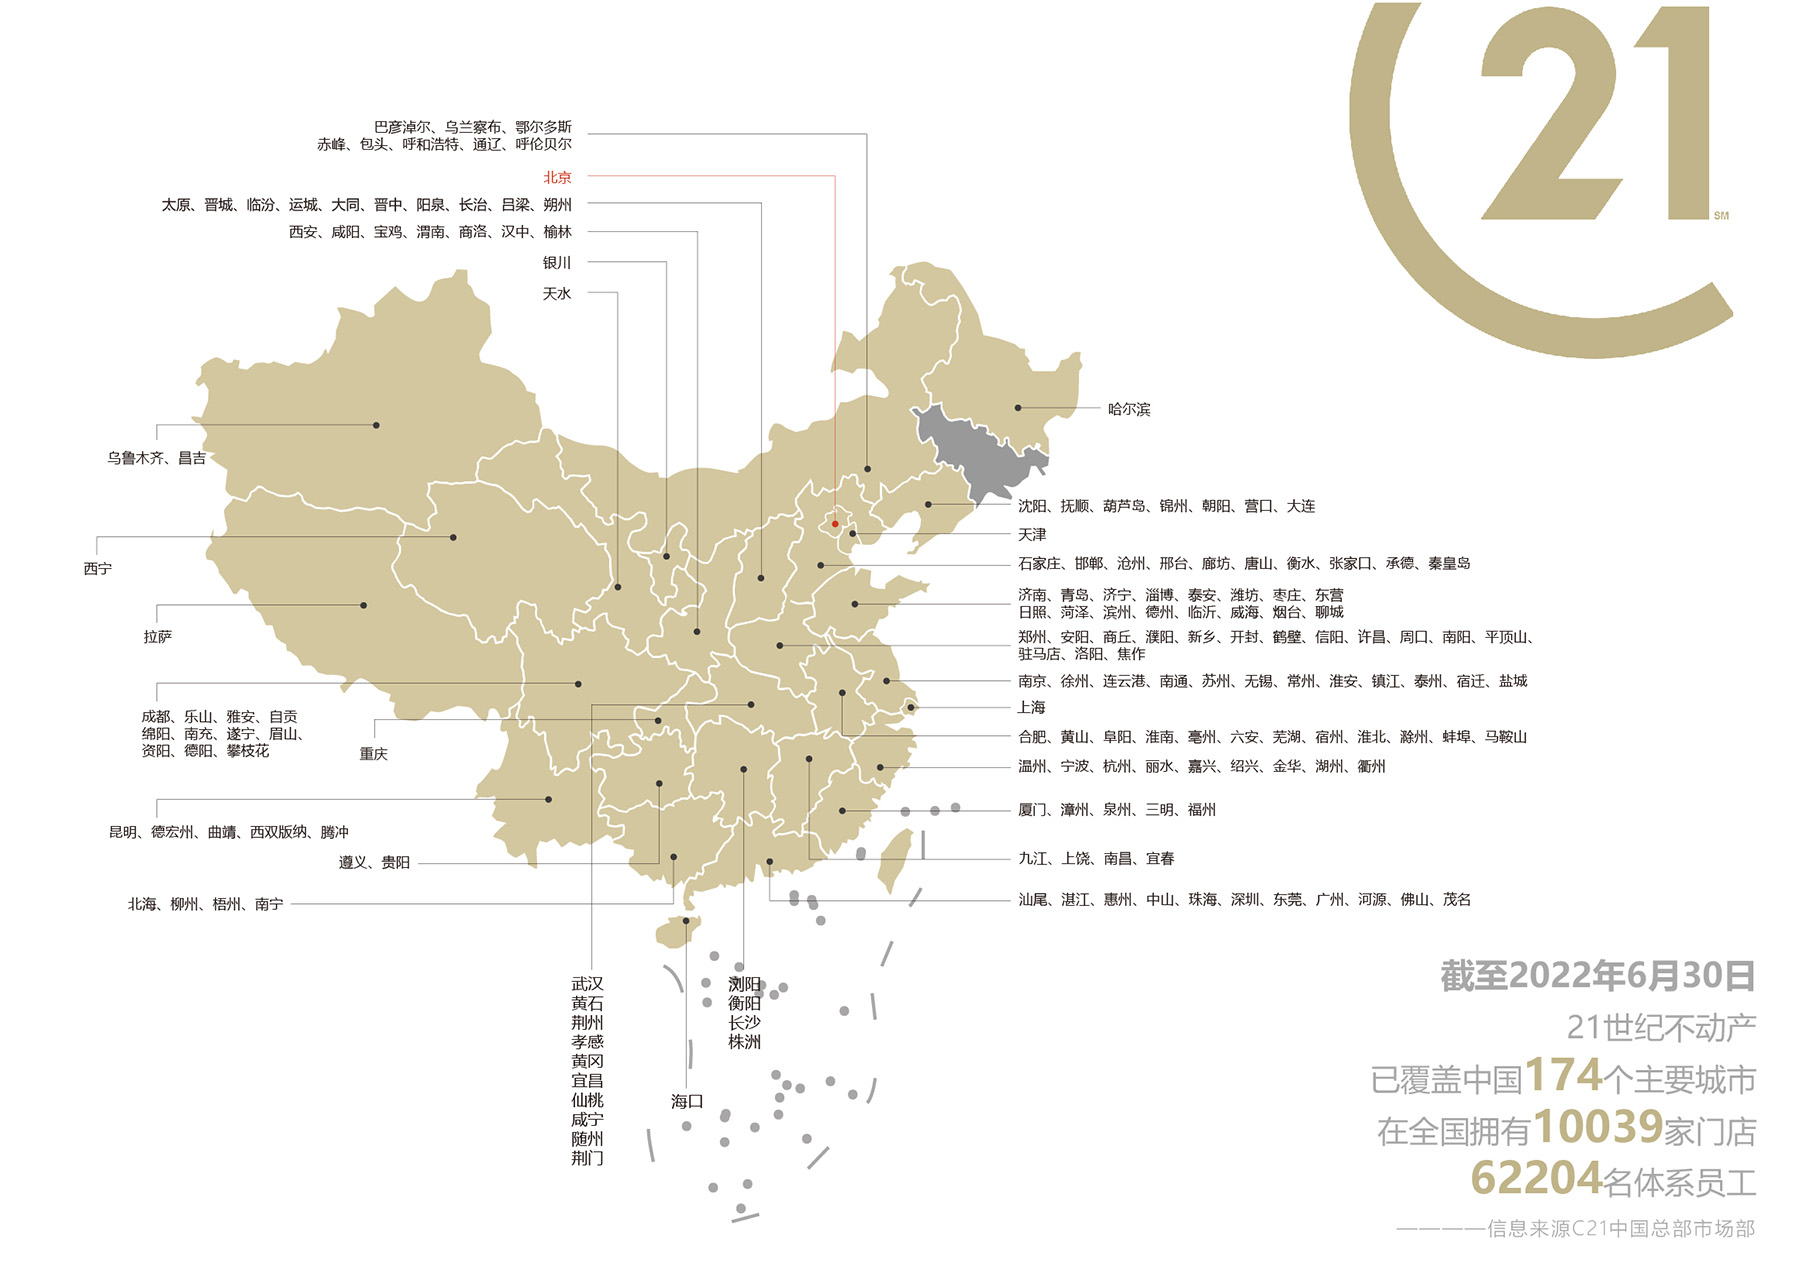 中国域名：数字化时代的关键基础设施 (中国域名数量统计)-偌夕博客